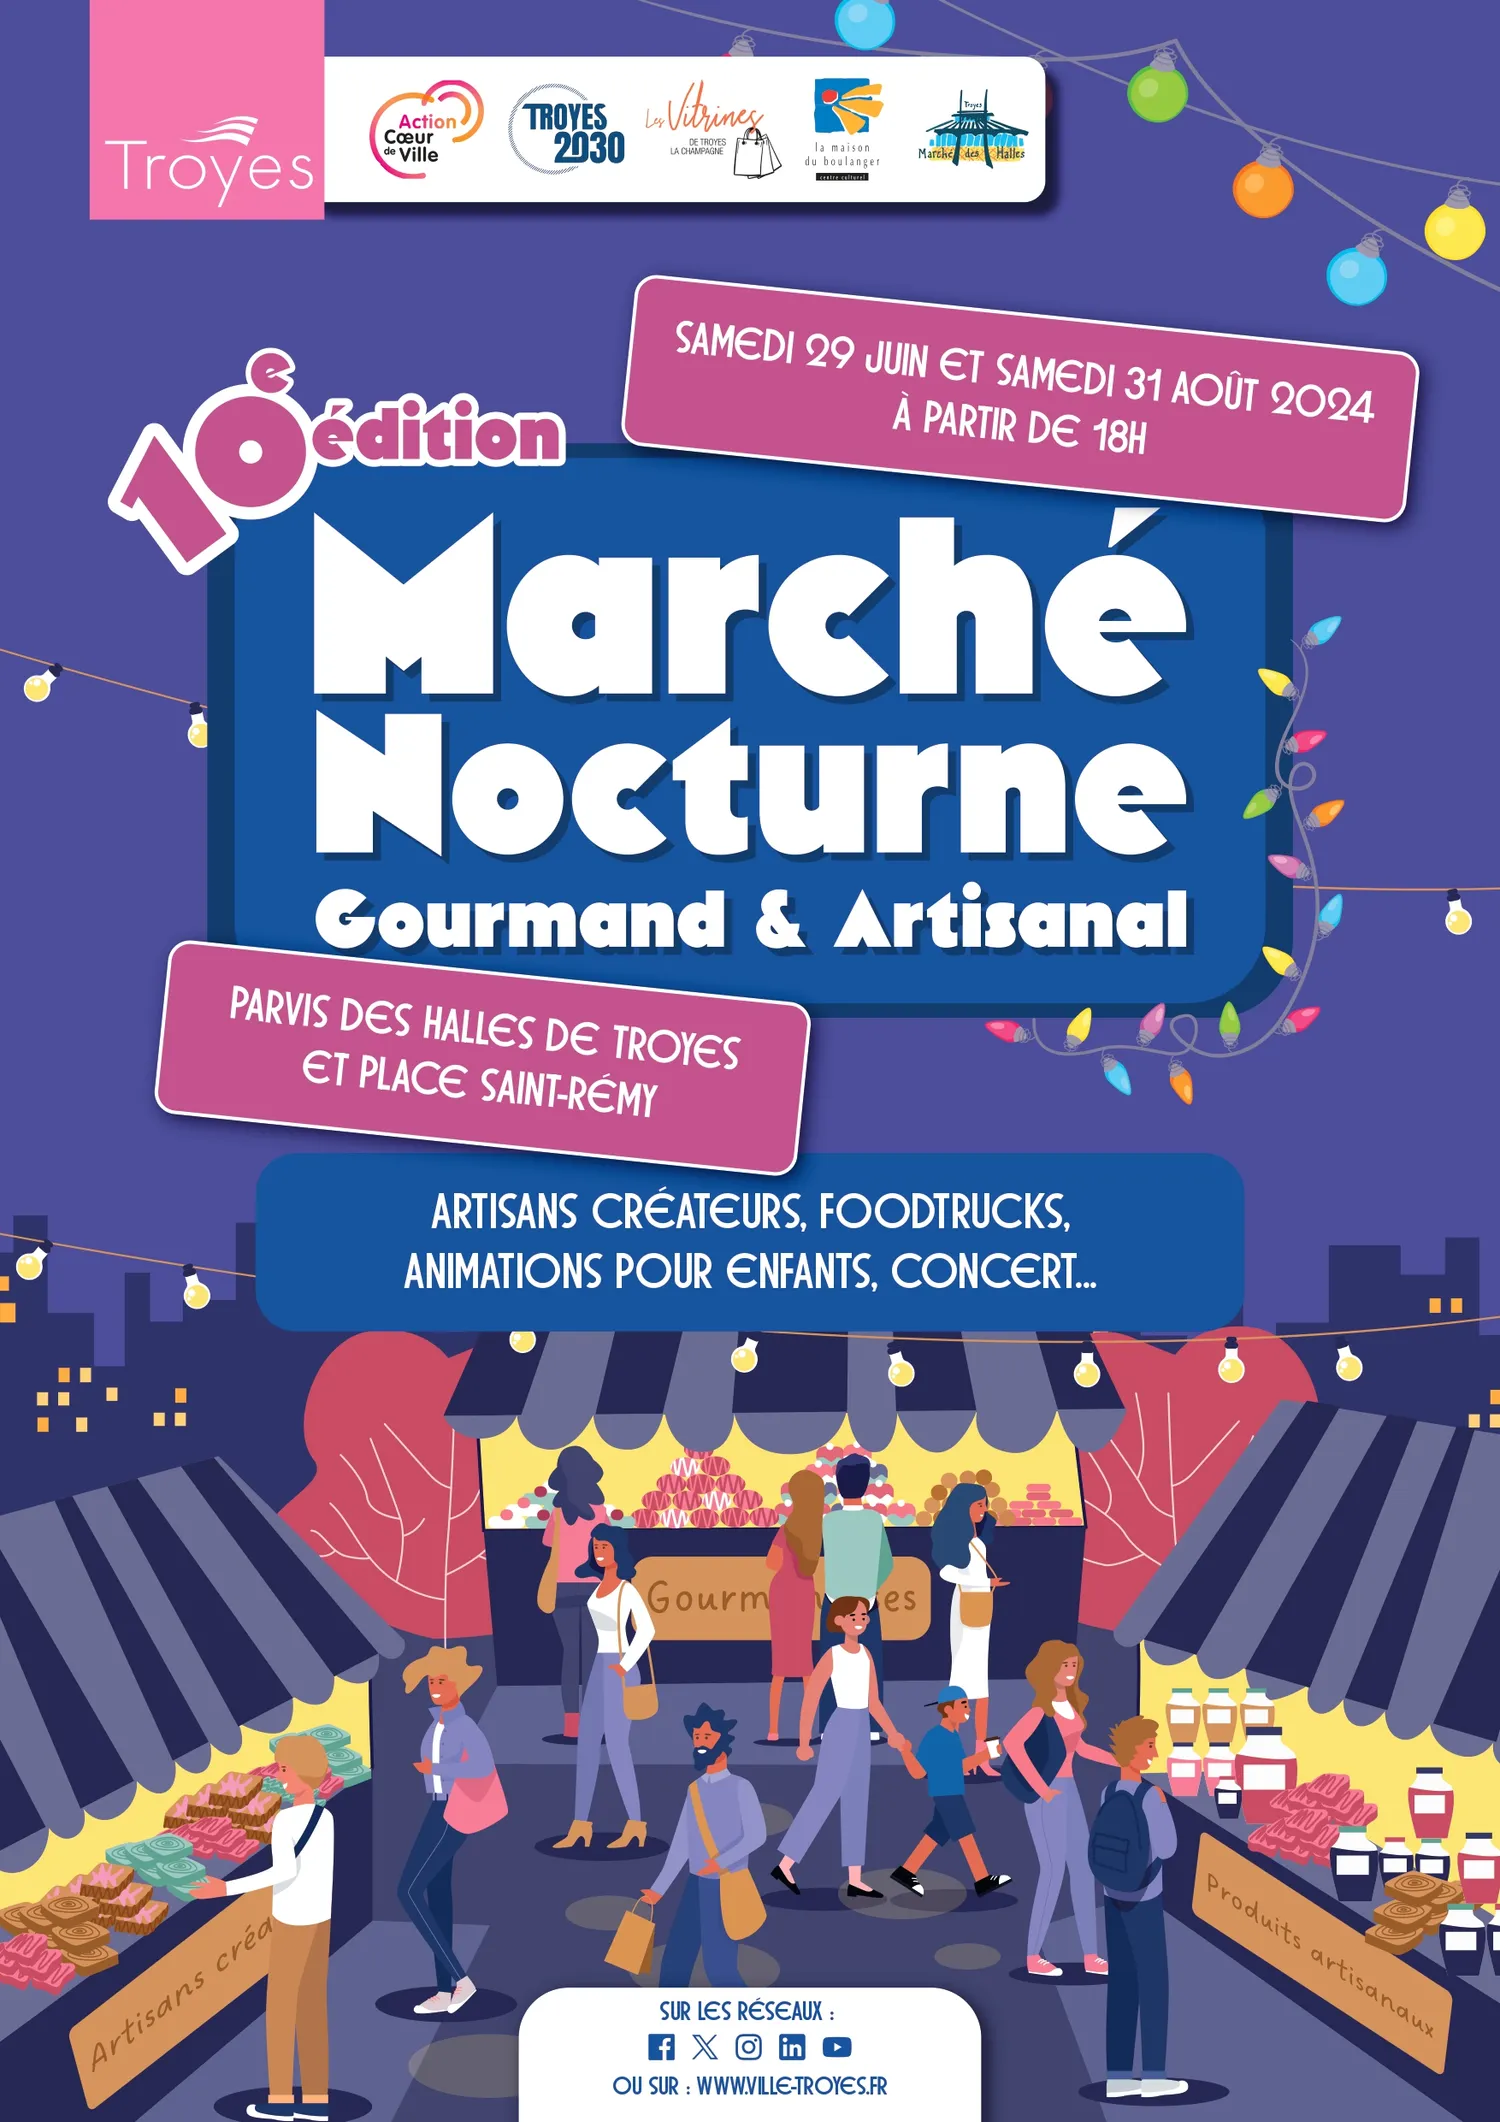 Image qui illustre: Marché Nocturne à Troyes - 1